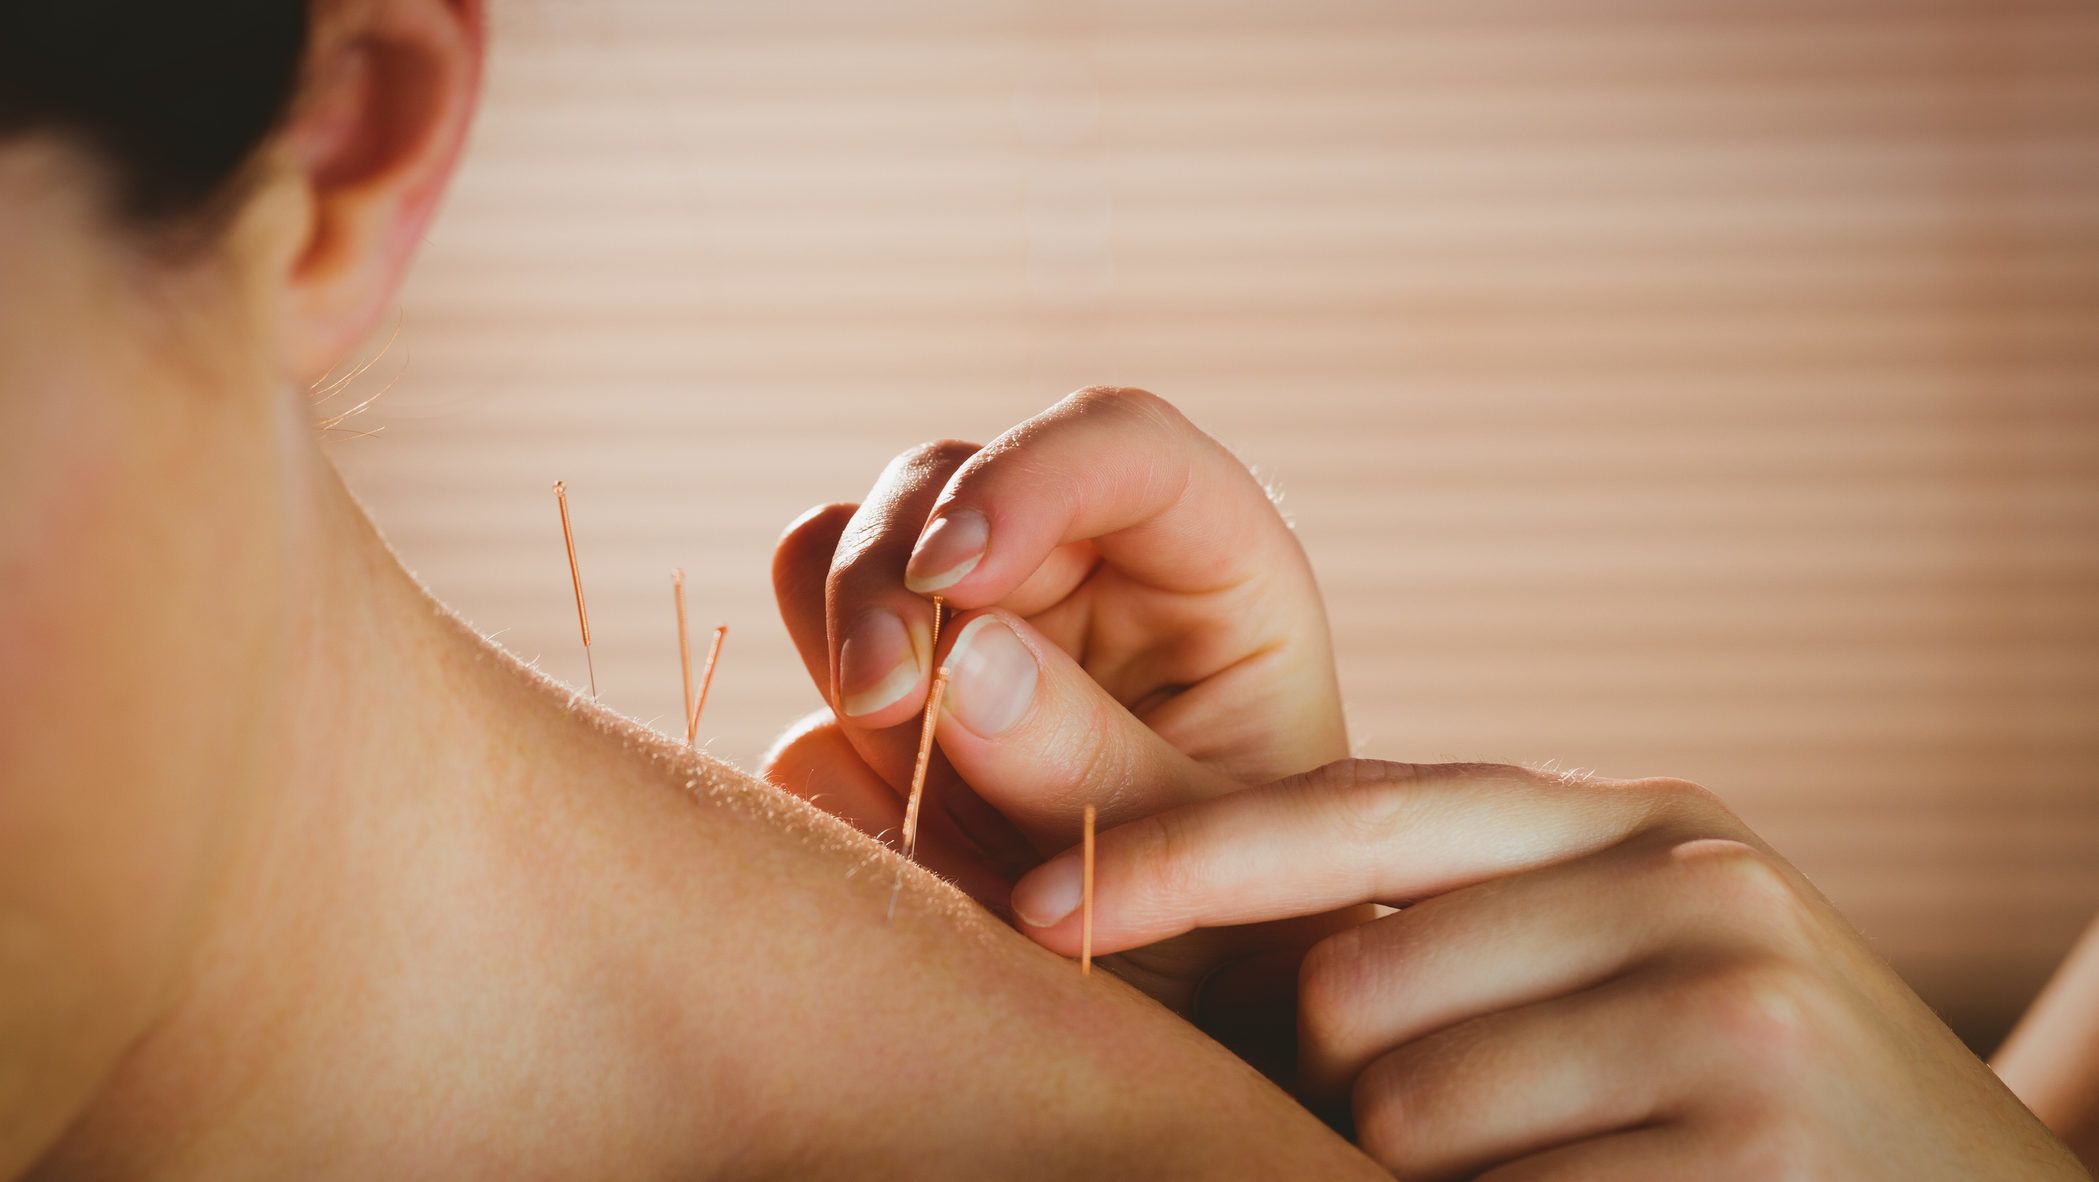 akupunktúra pikkelysömör kezelés vélemények pikkelysömör fotó a test kezelésén